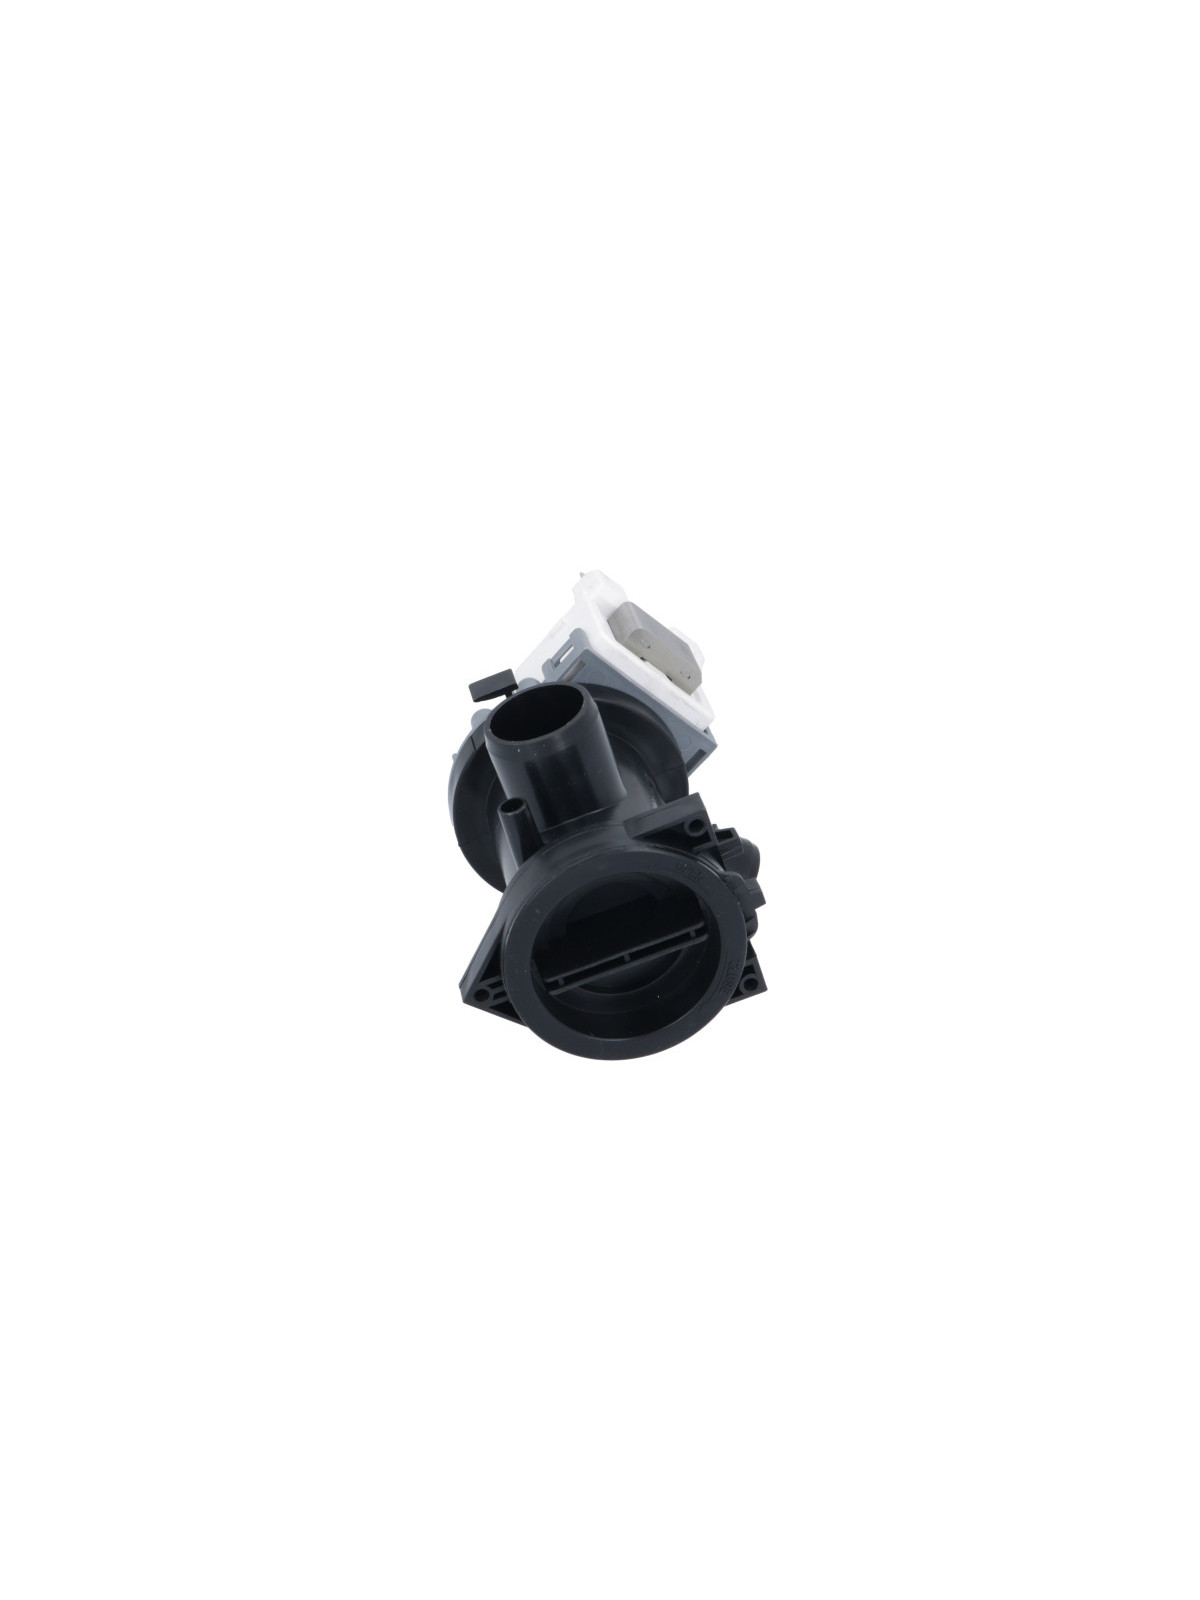 Pompe de vidange compatible LG F74890WH - Lave linge